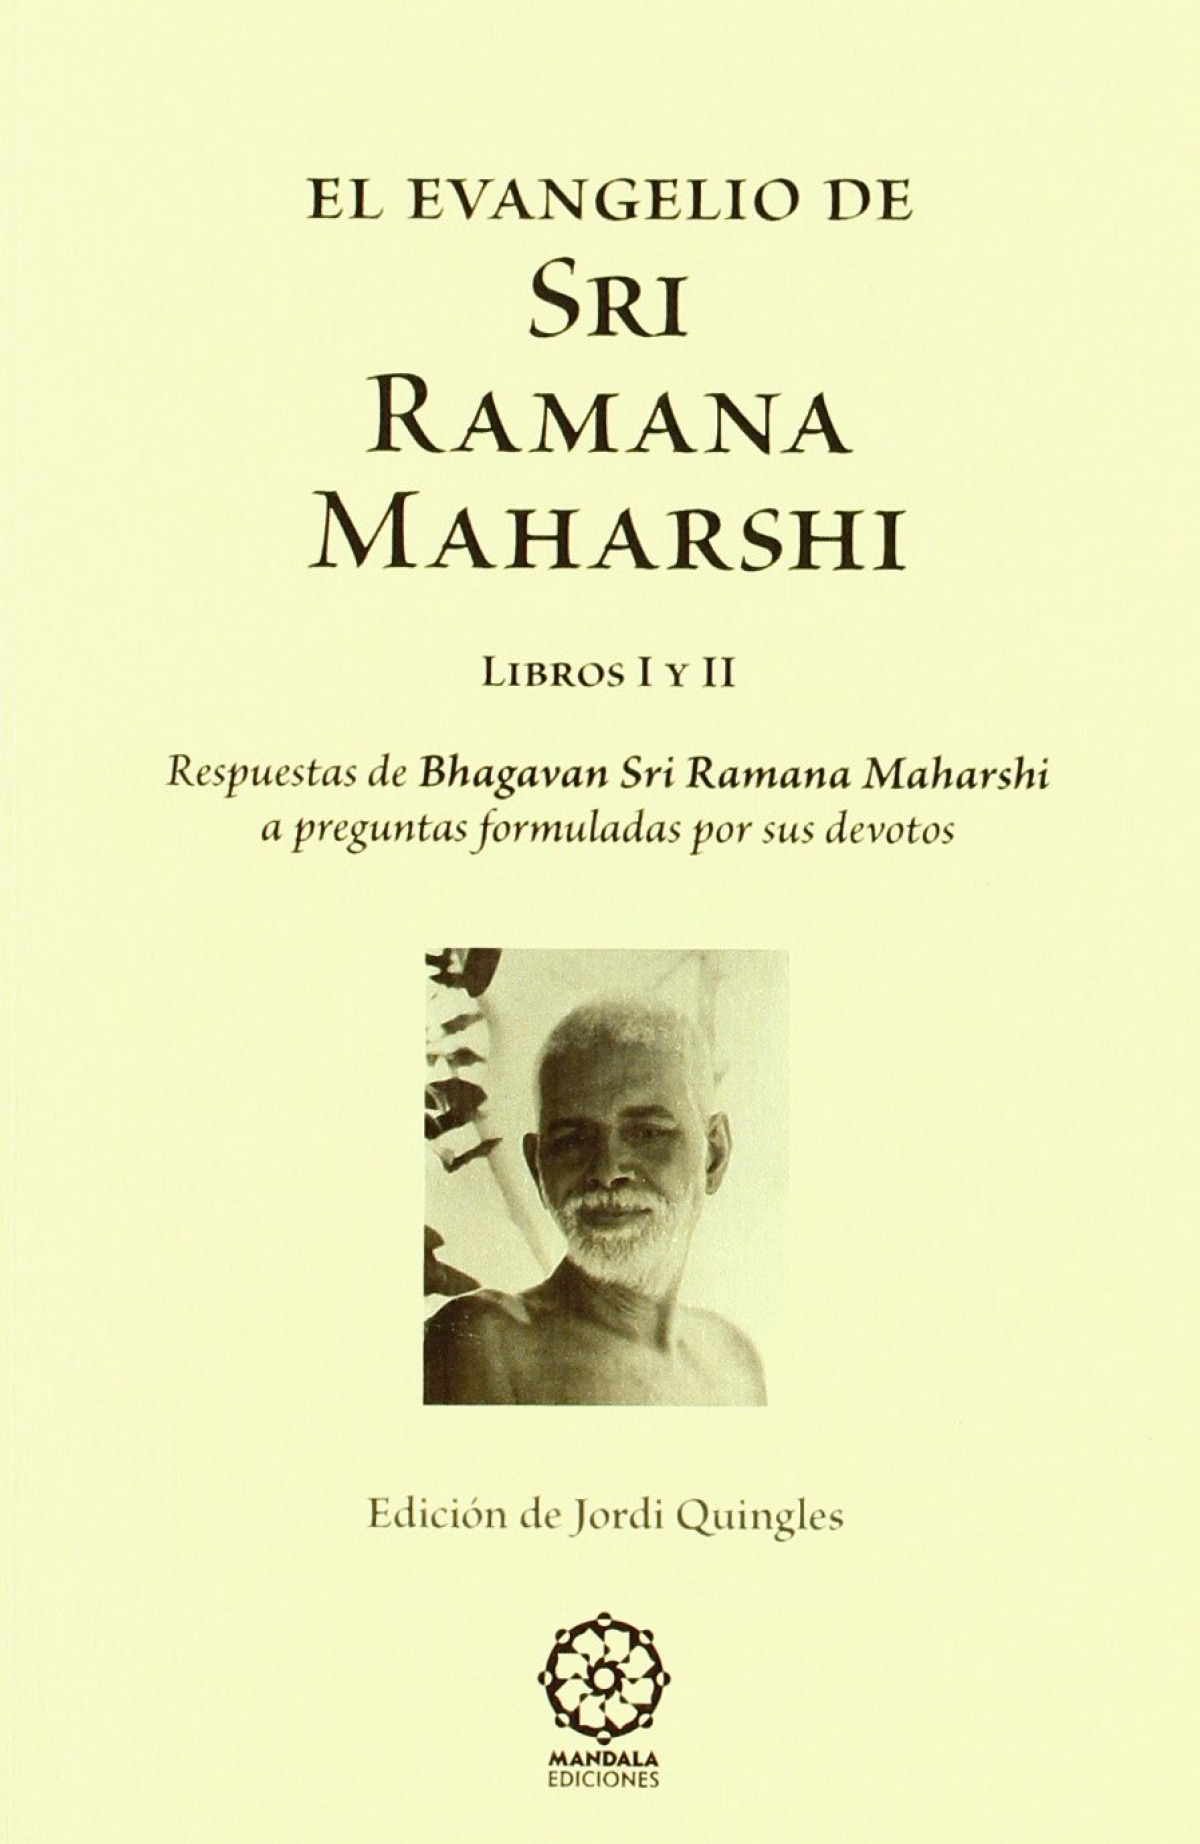 El evangelio de Sri Romana Maharshi - Quingles Fontcuberta, Jordied. lit.